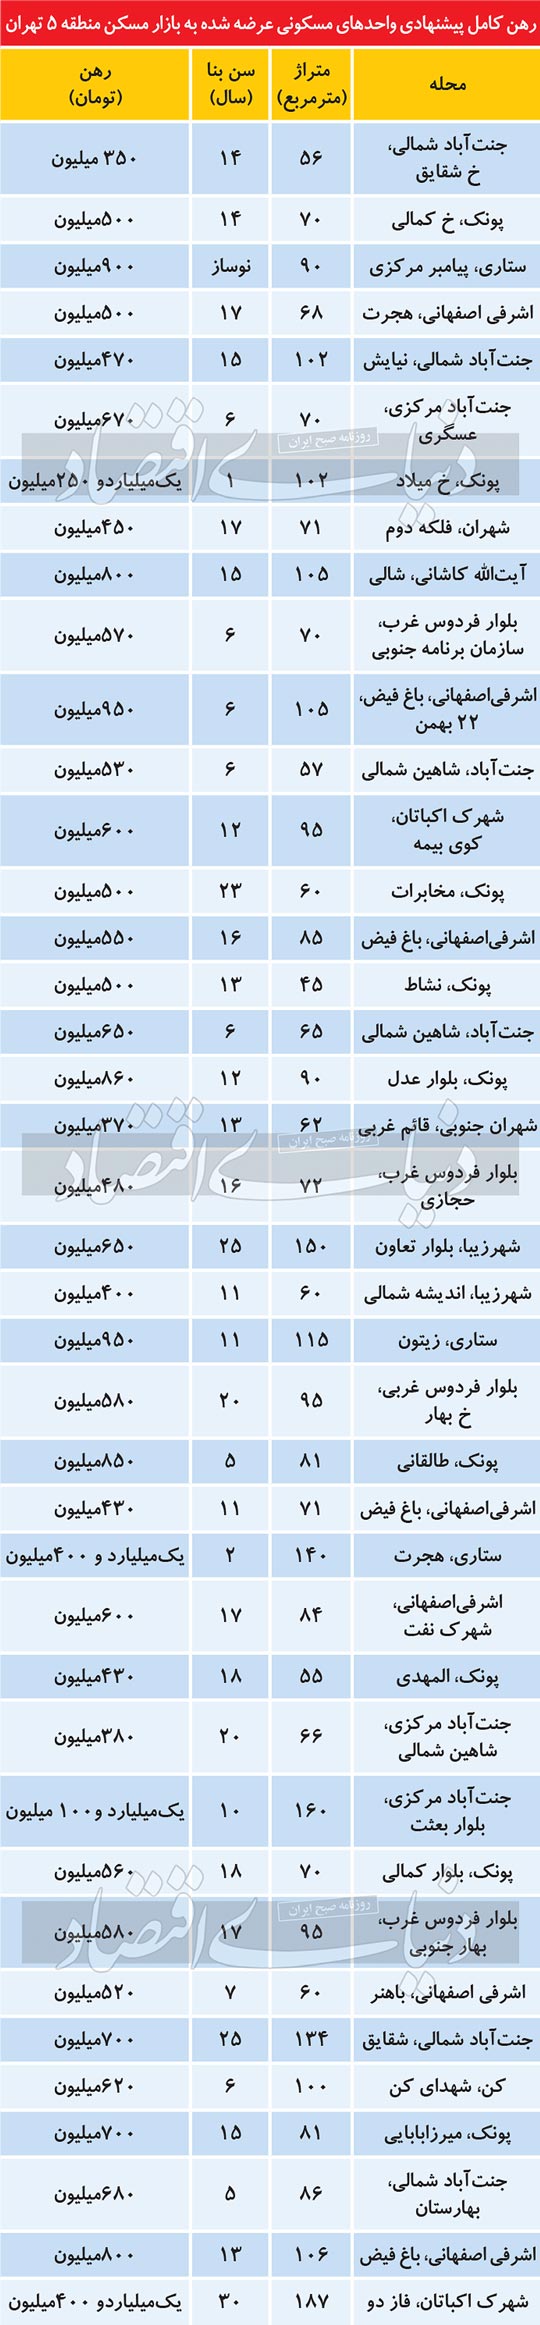 قیمت روز اجاره مسکن در تهران